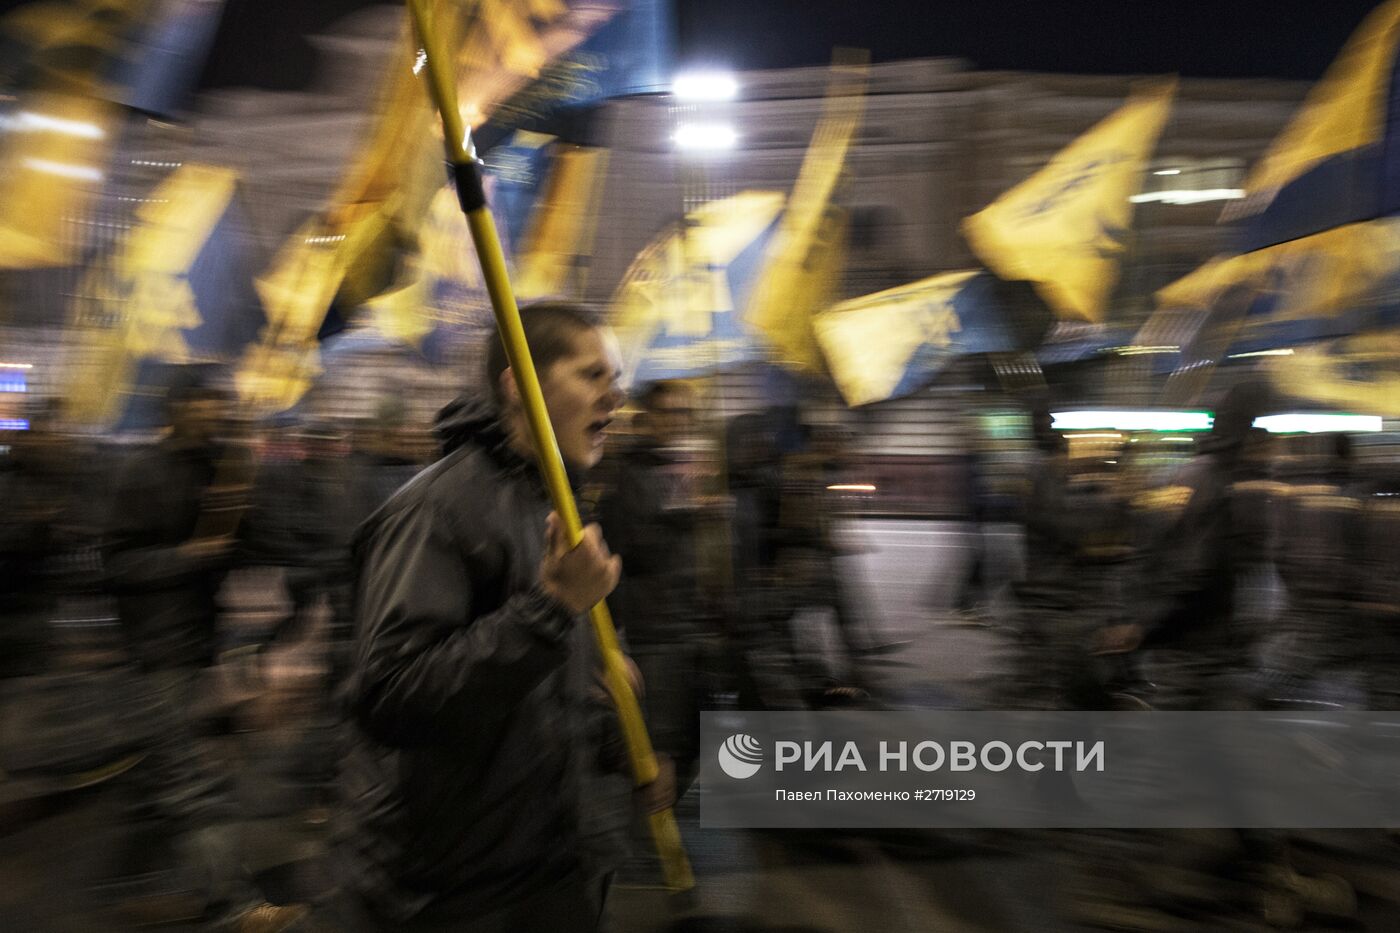 Акции в украинских городах в День защитника Украины